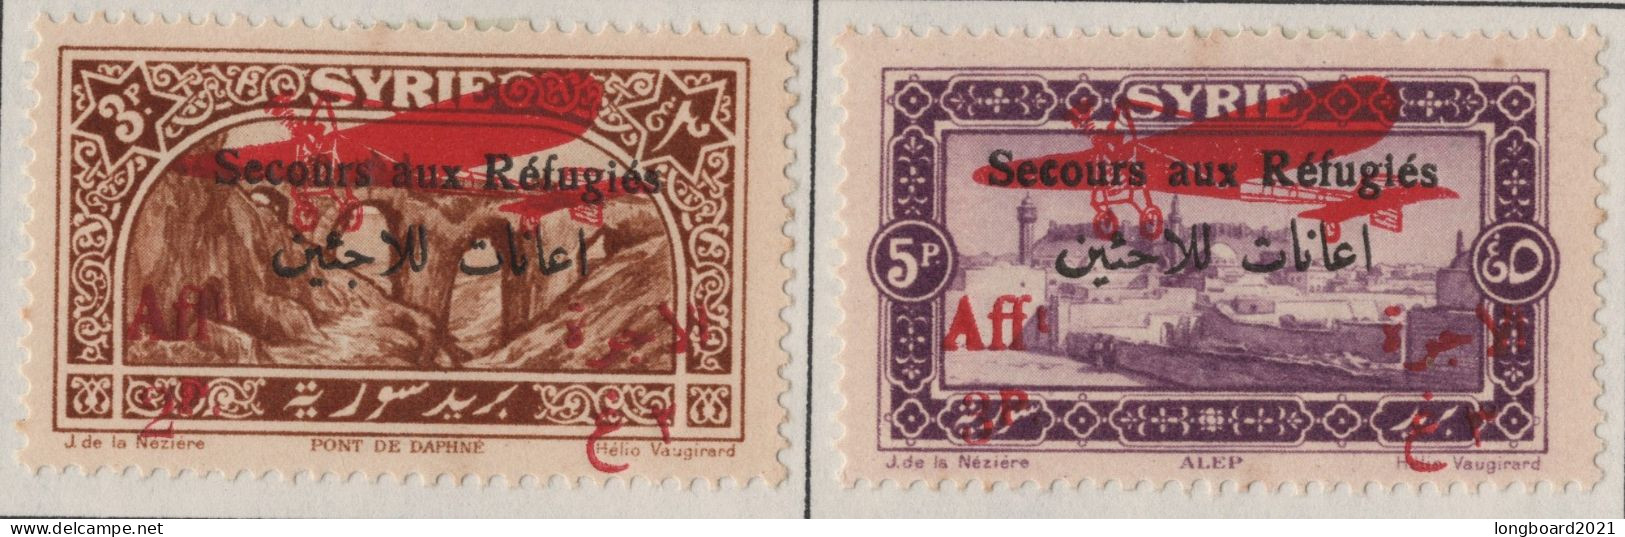 SYRIA - SET 1926 3 + 5 P REFUGEE -AIRMAIL- * Mi 296-297 - Siria